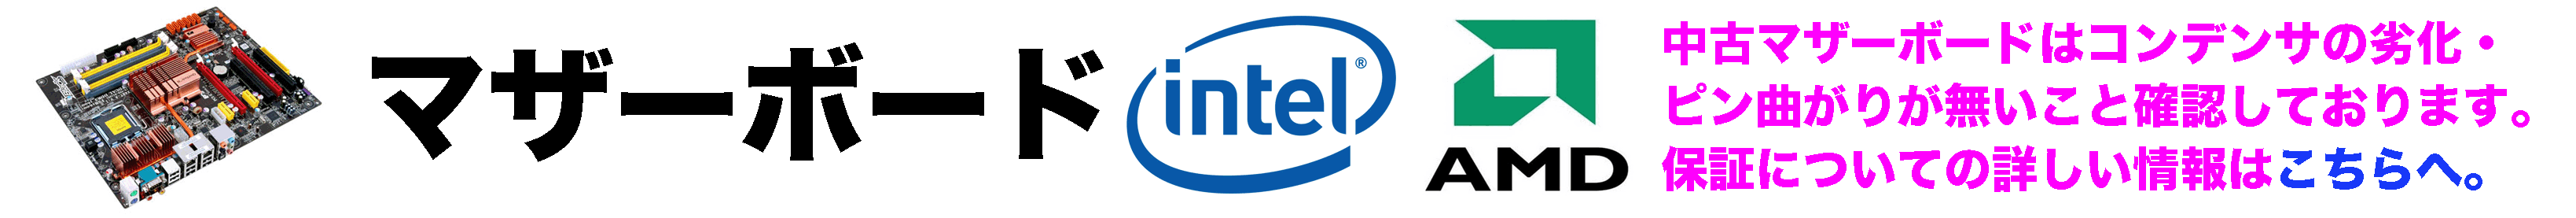 intel インテル マザーボード